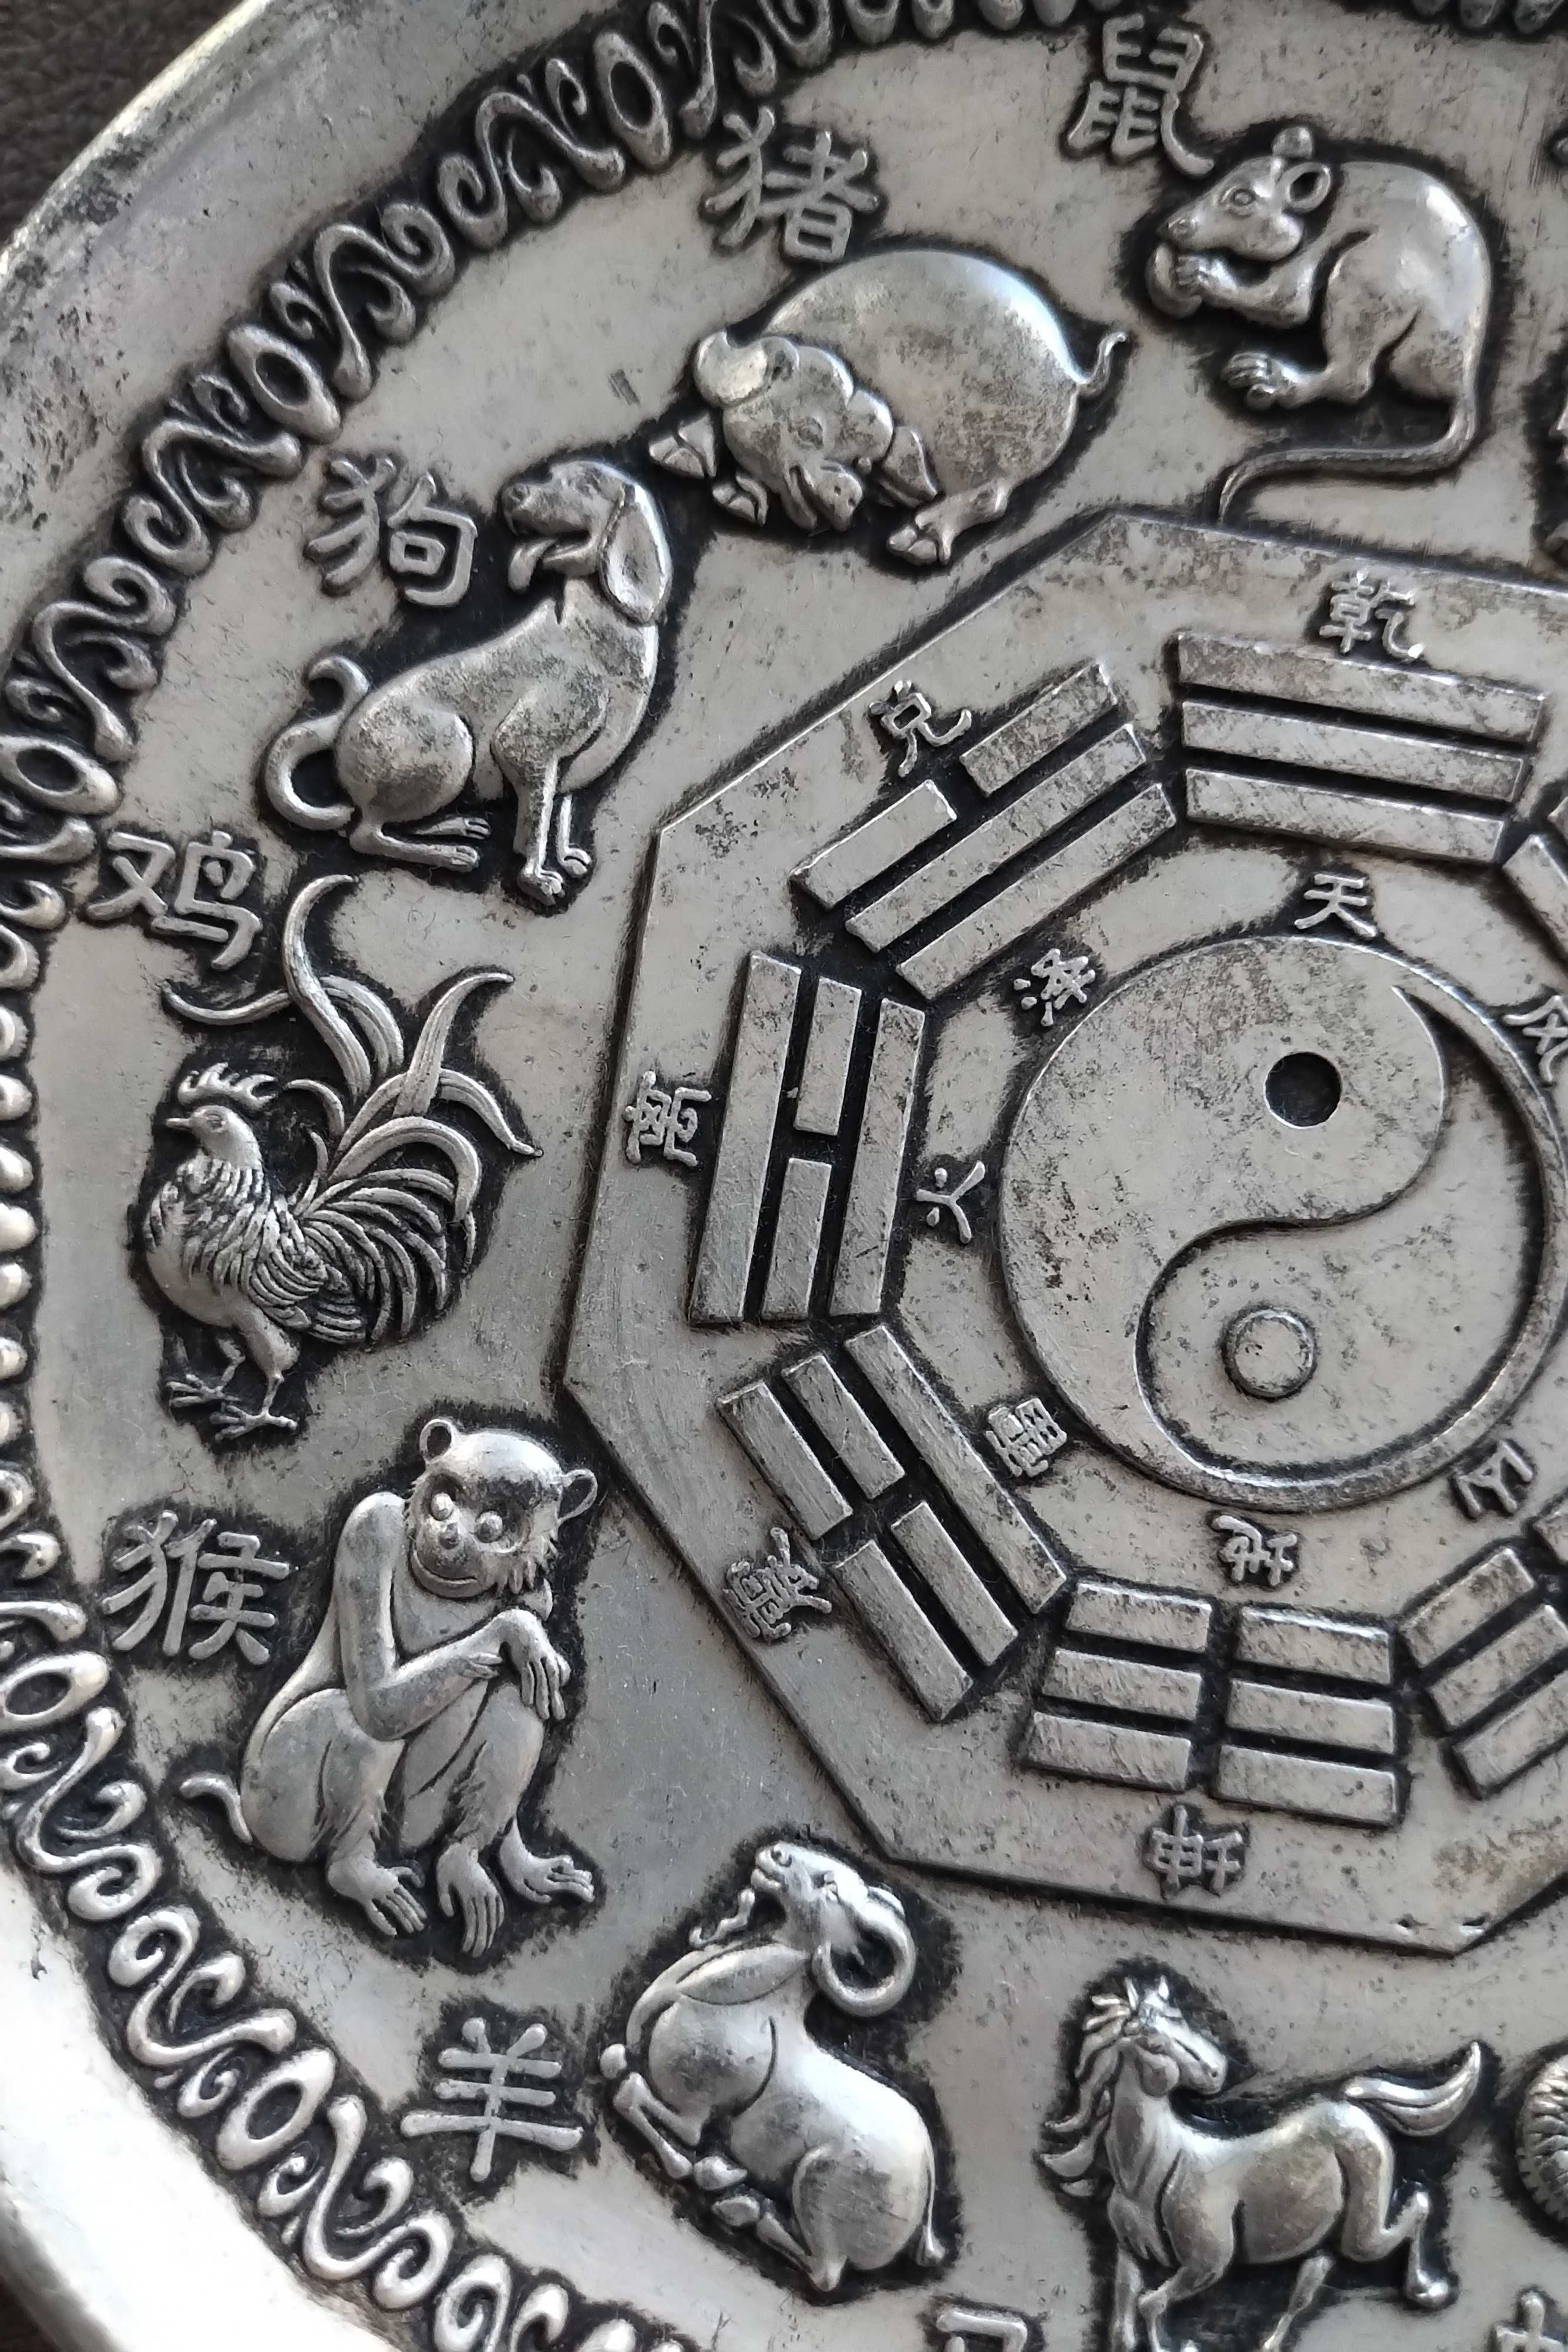 Horoskop symbole -Tao chinski metalowy ( tzw bialy metal ) talerz